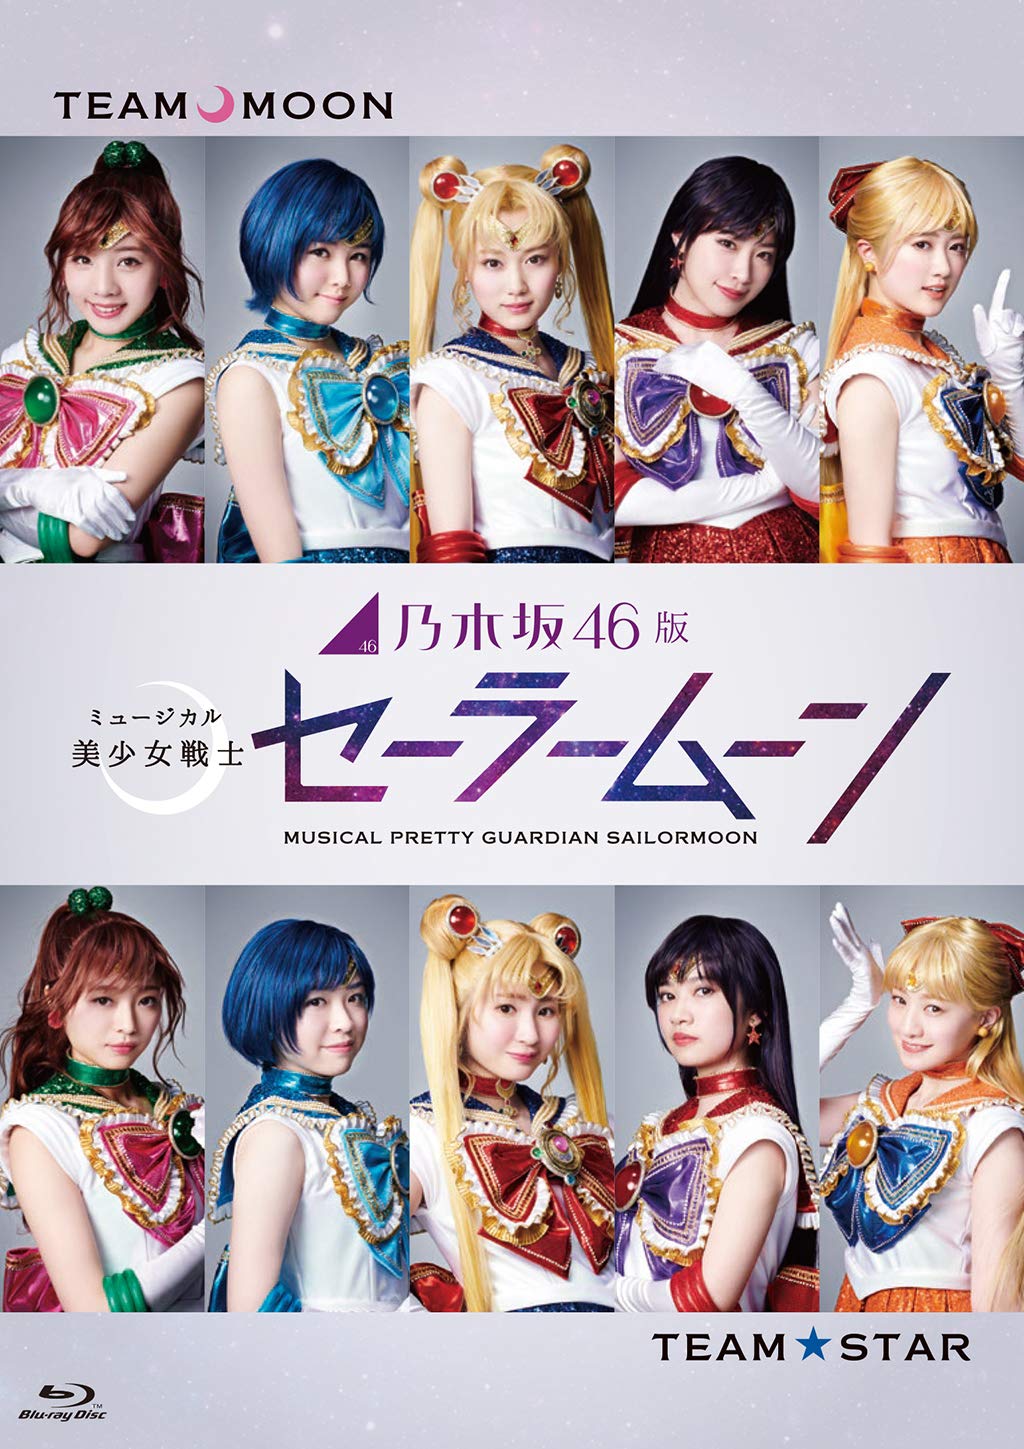 Nogizaka46 version Bishoujo Senshi Sailor Moon | AKB48 Wiki | Fandom